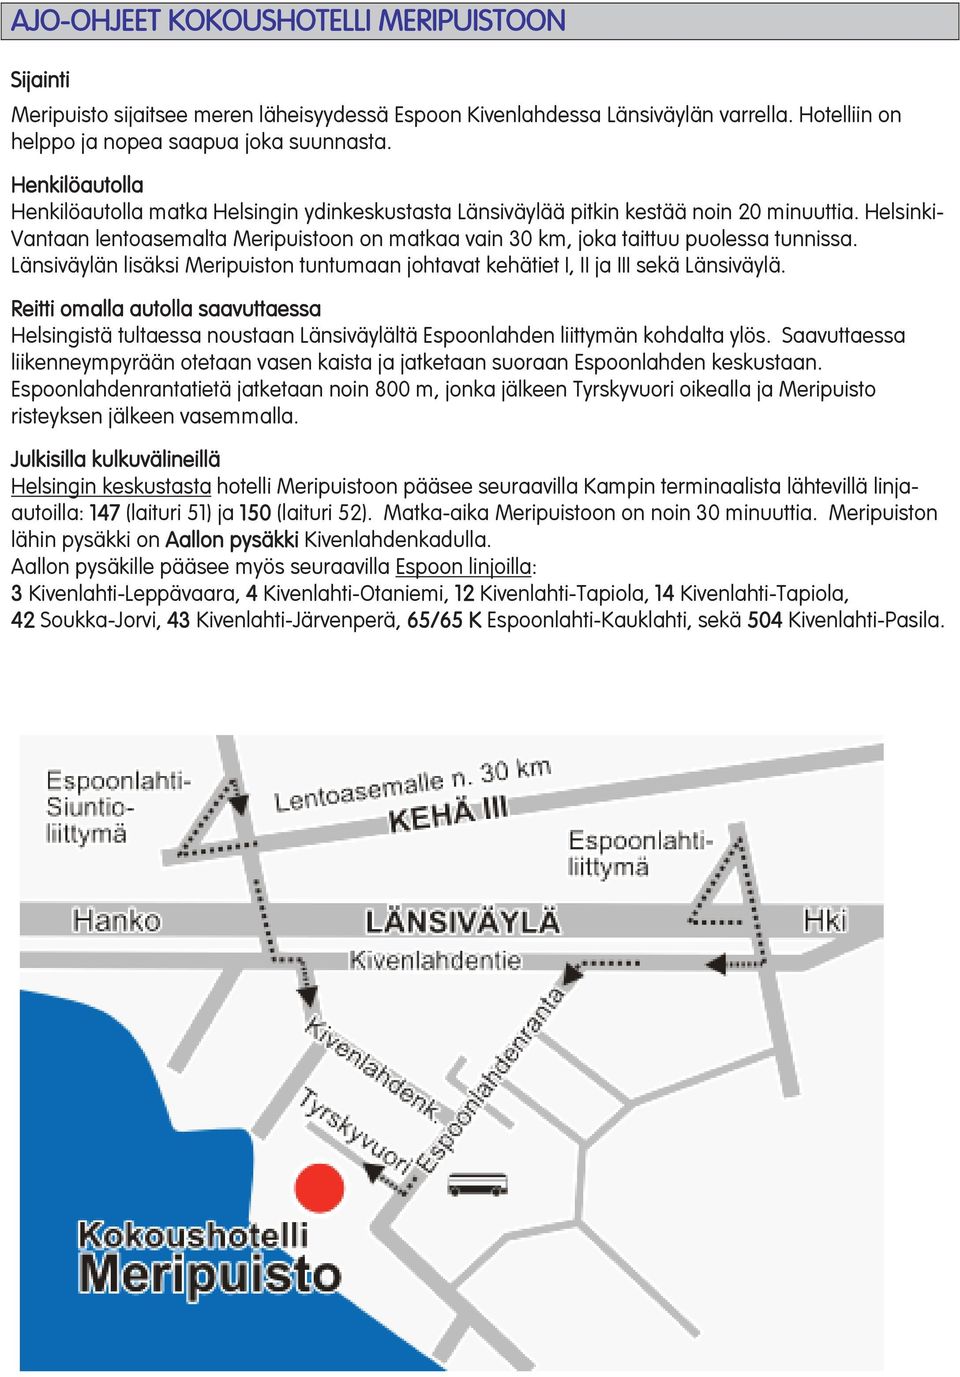 Helsinki- Vantaan lentoasemalta Meripuistoon on matkaa vain 30 km, joka taittuu puolessa tunnissa. Länsiväylän lisäksi Meripuiston tuntumaan johtavat kehätiet I, II ja III sekä Länsiväylä.